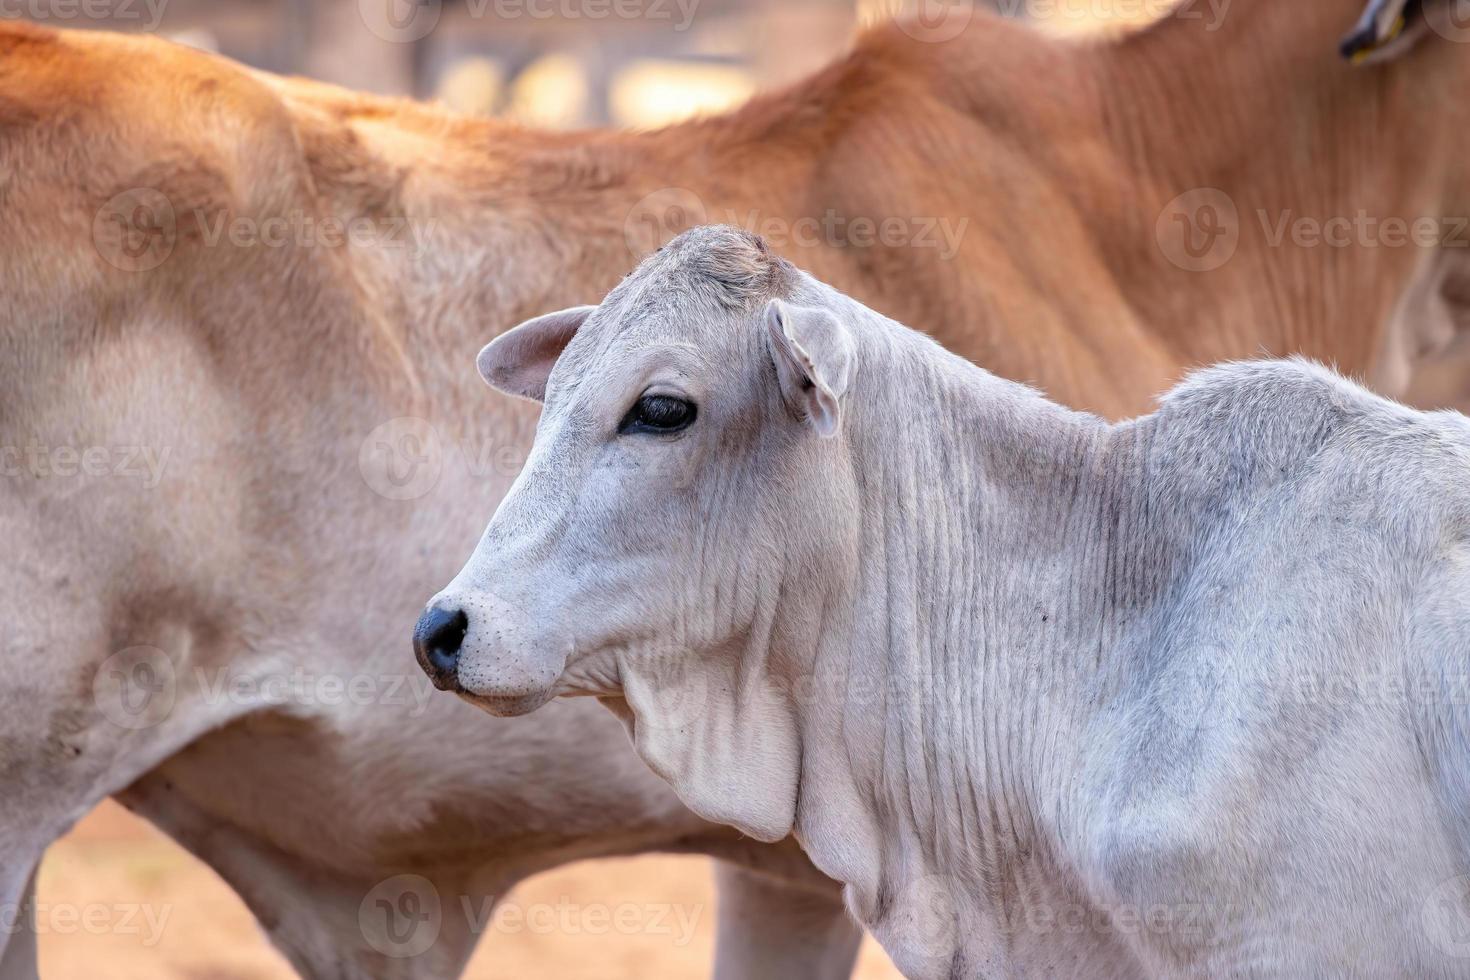 vache adulte dans une ferme photo